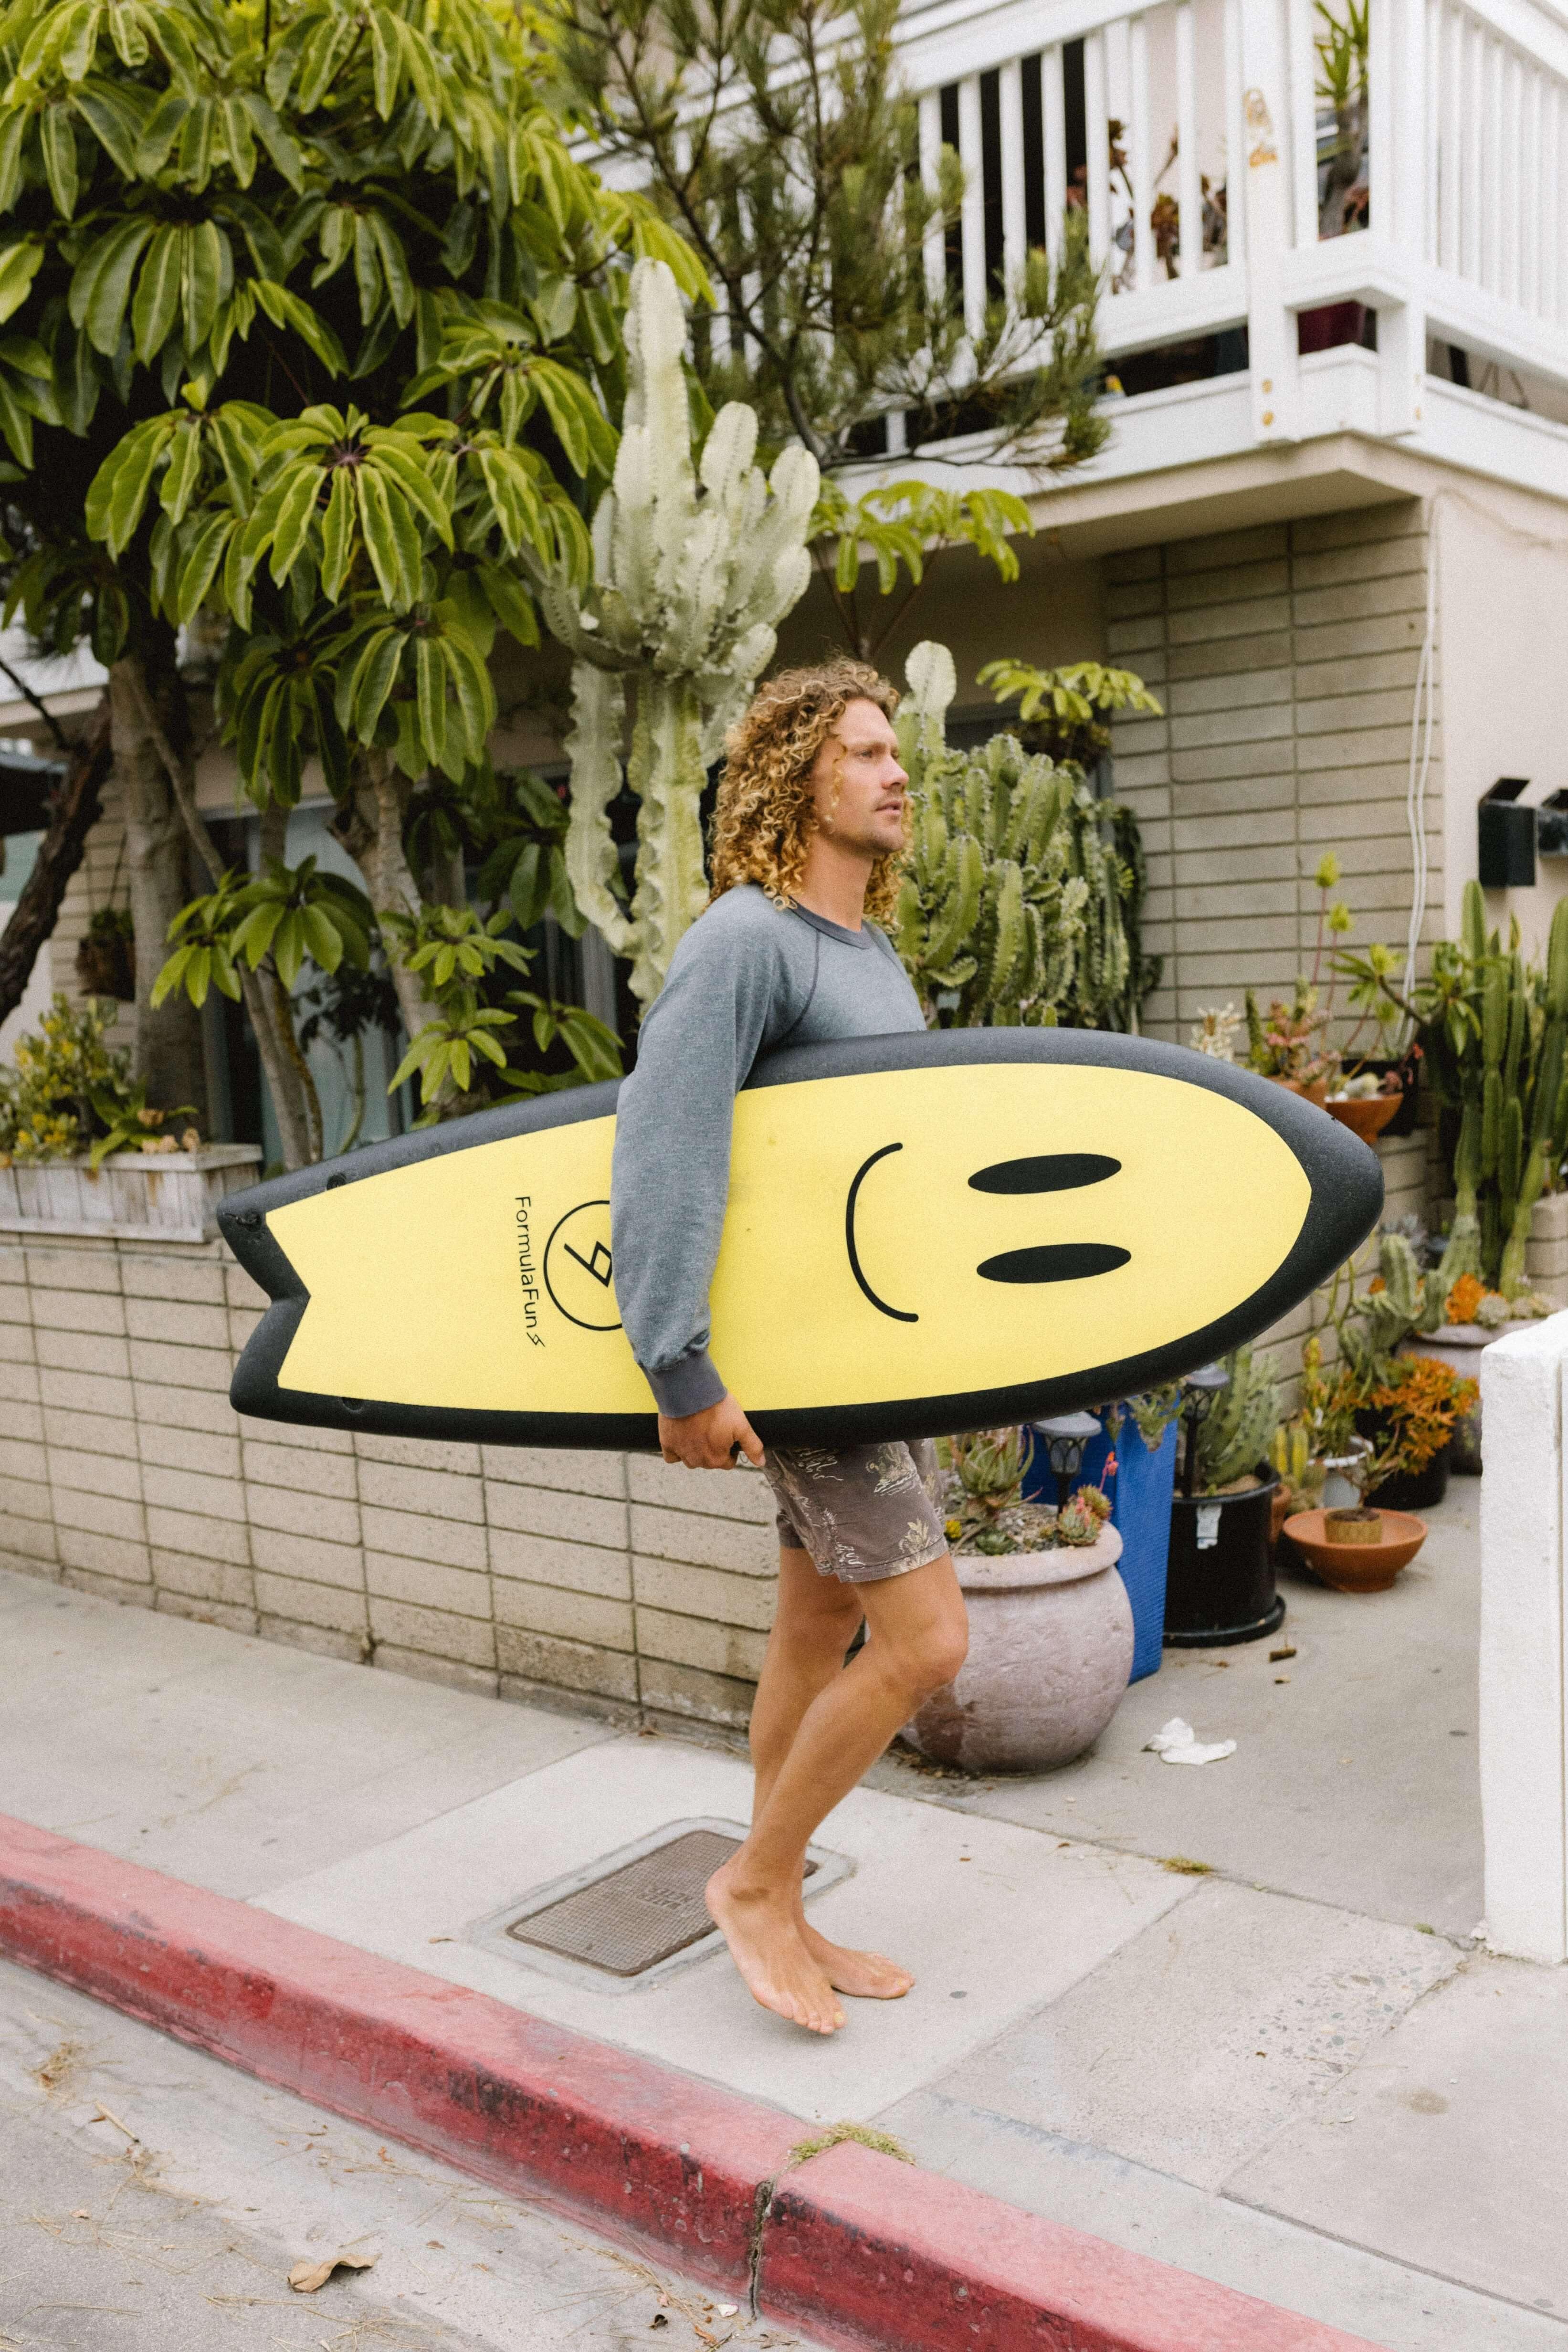 A man walking on a sidewalk with a yellow 5 foot 3 inch Formula Fun Foamies Twinnie surfboard with a smiley illustration